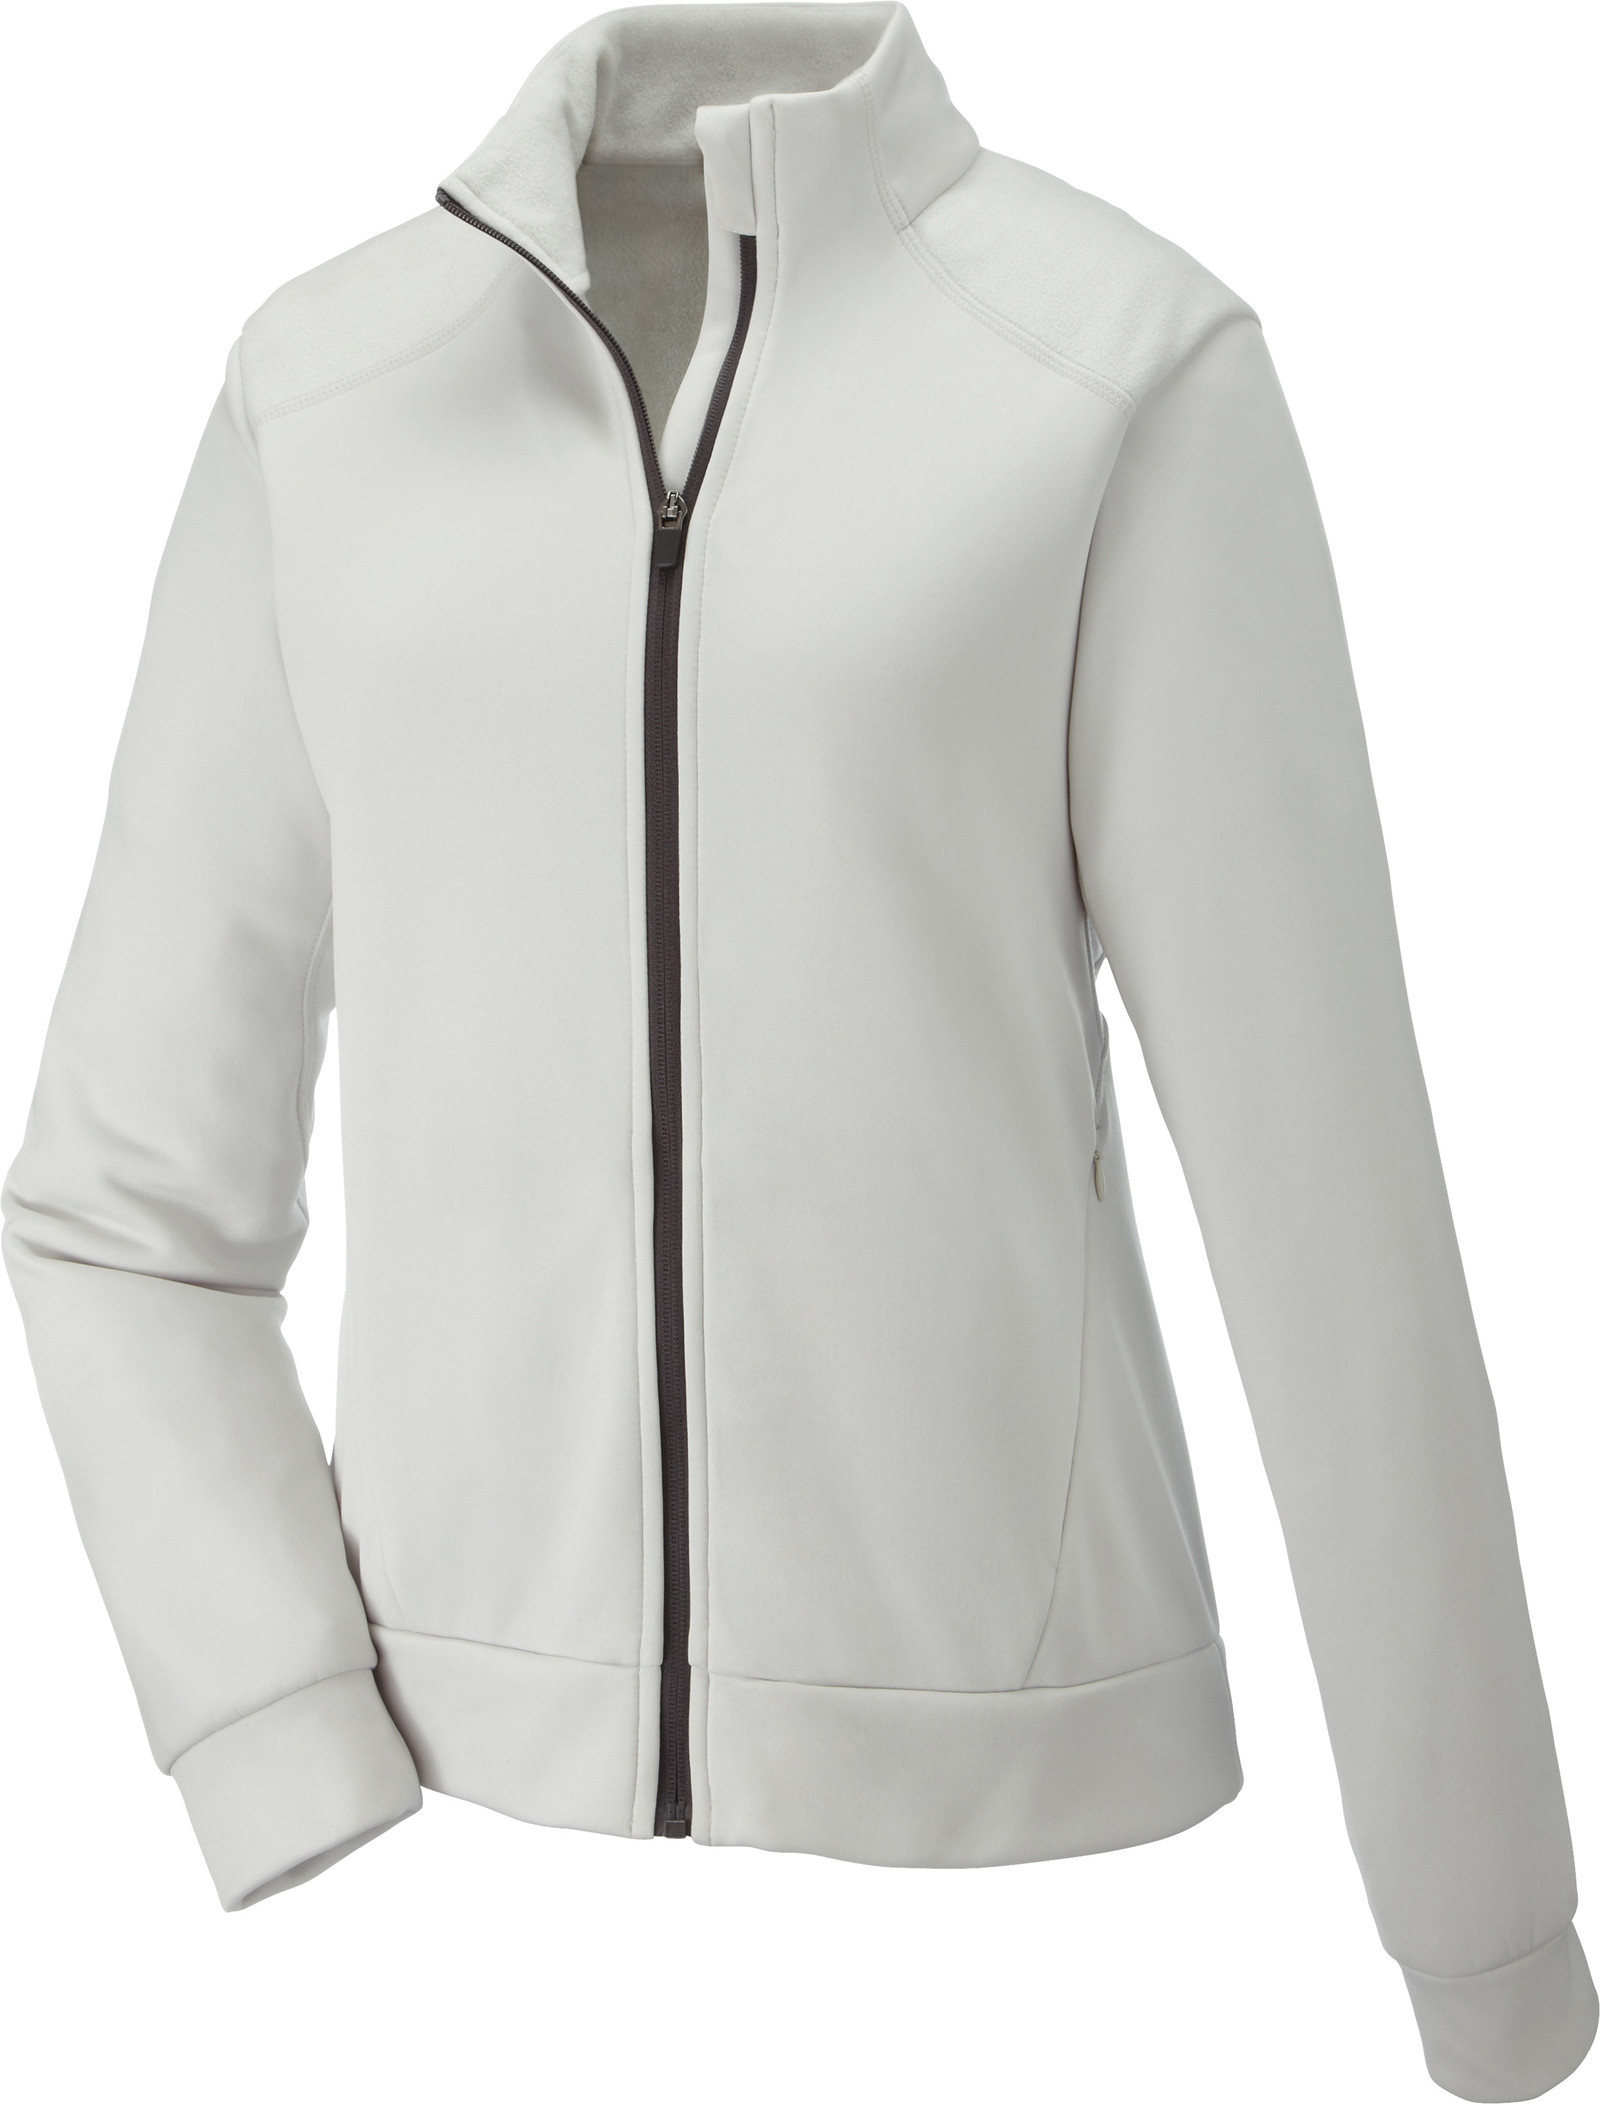 Ash City Bonded Fleece 78660 - Evoke Ladies' Bonded Fleece Jacket